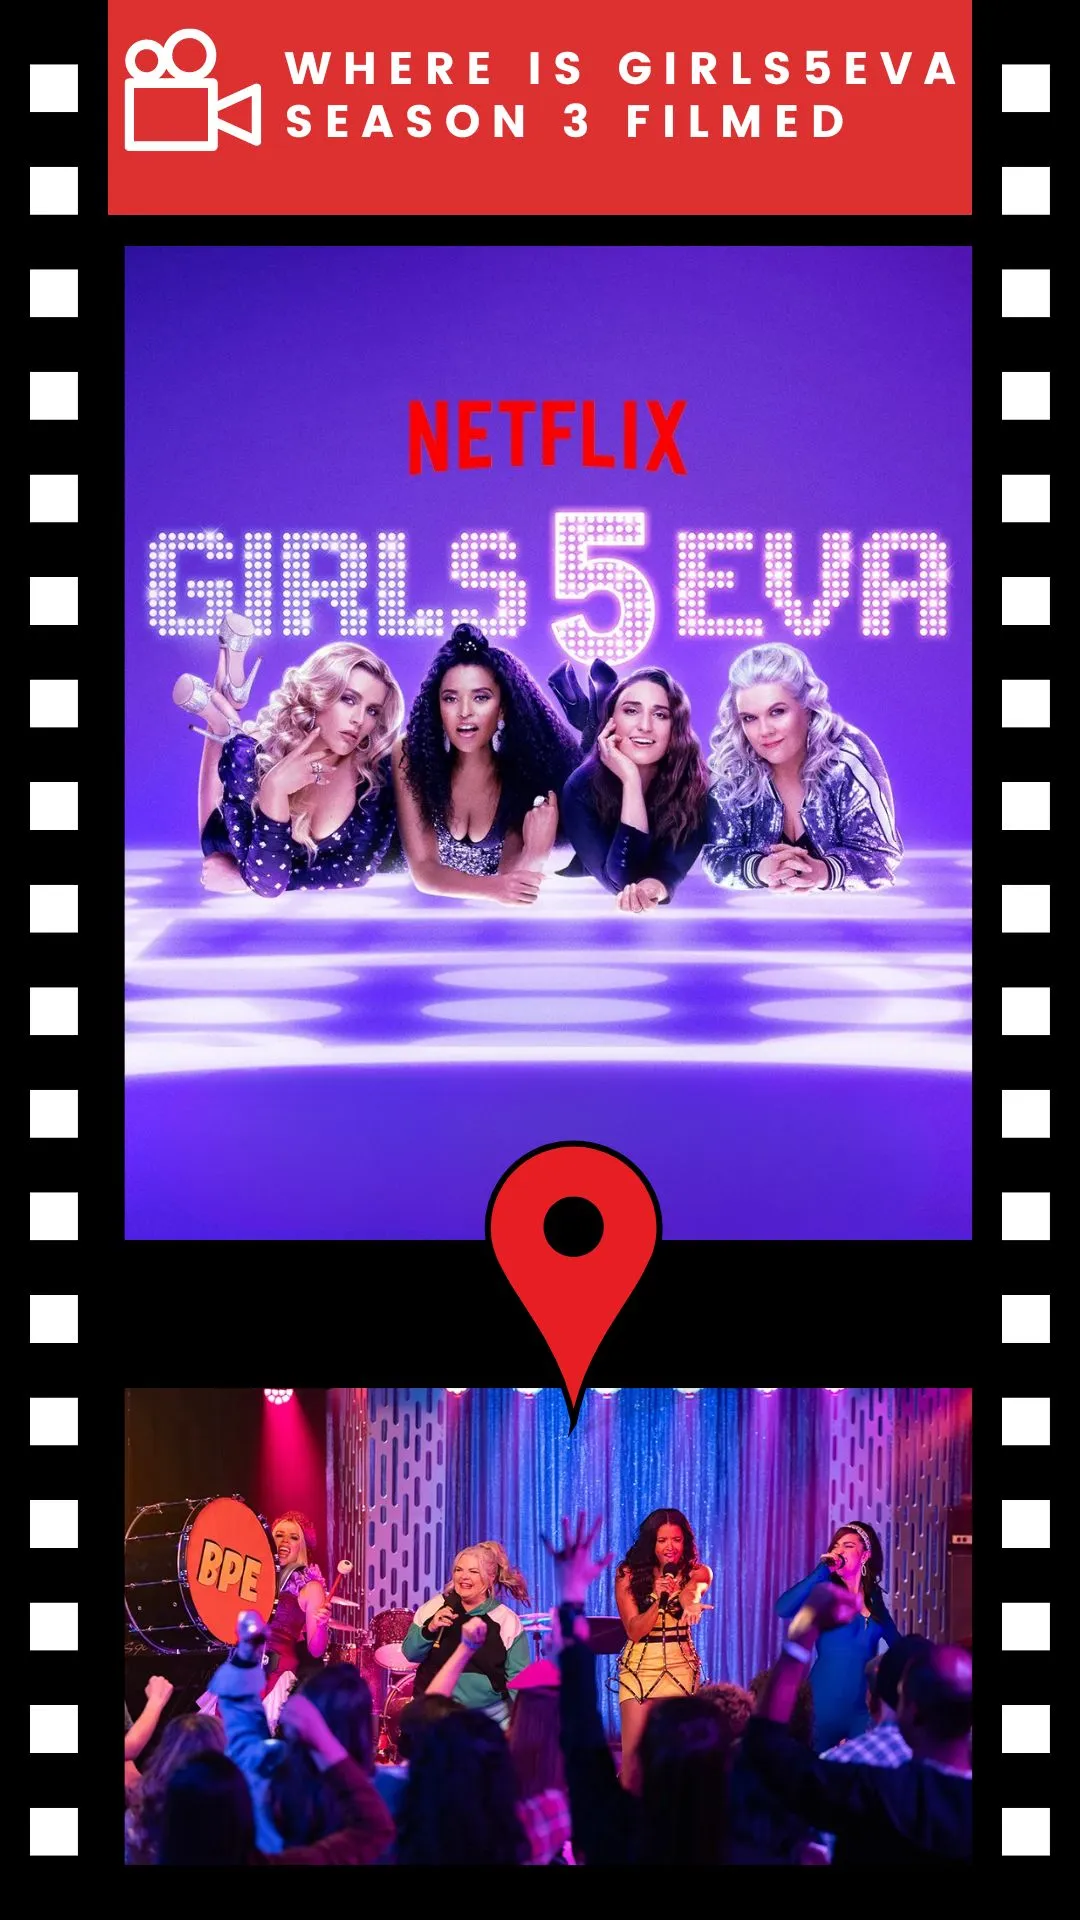 Where Is Girls5eva Season 3 Filmed